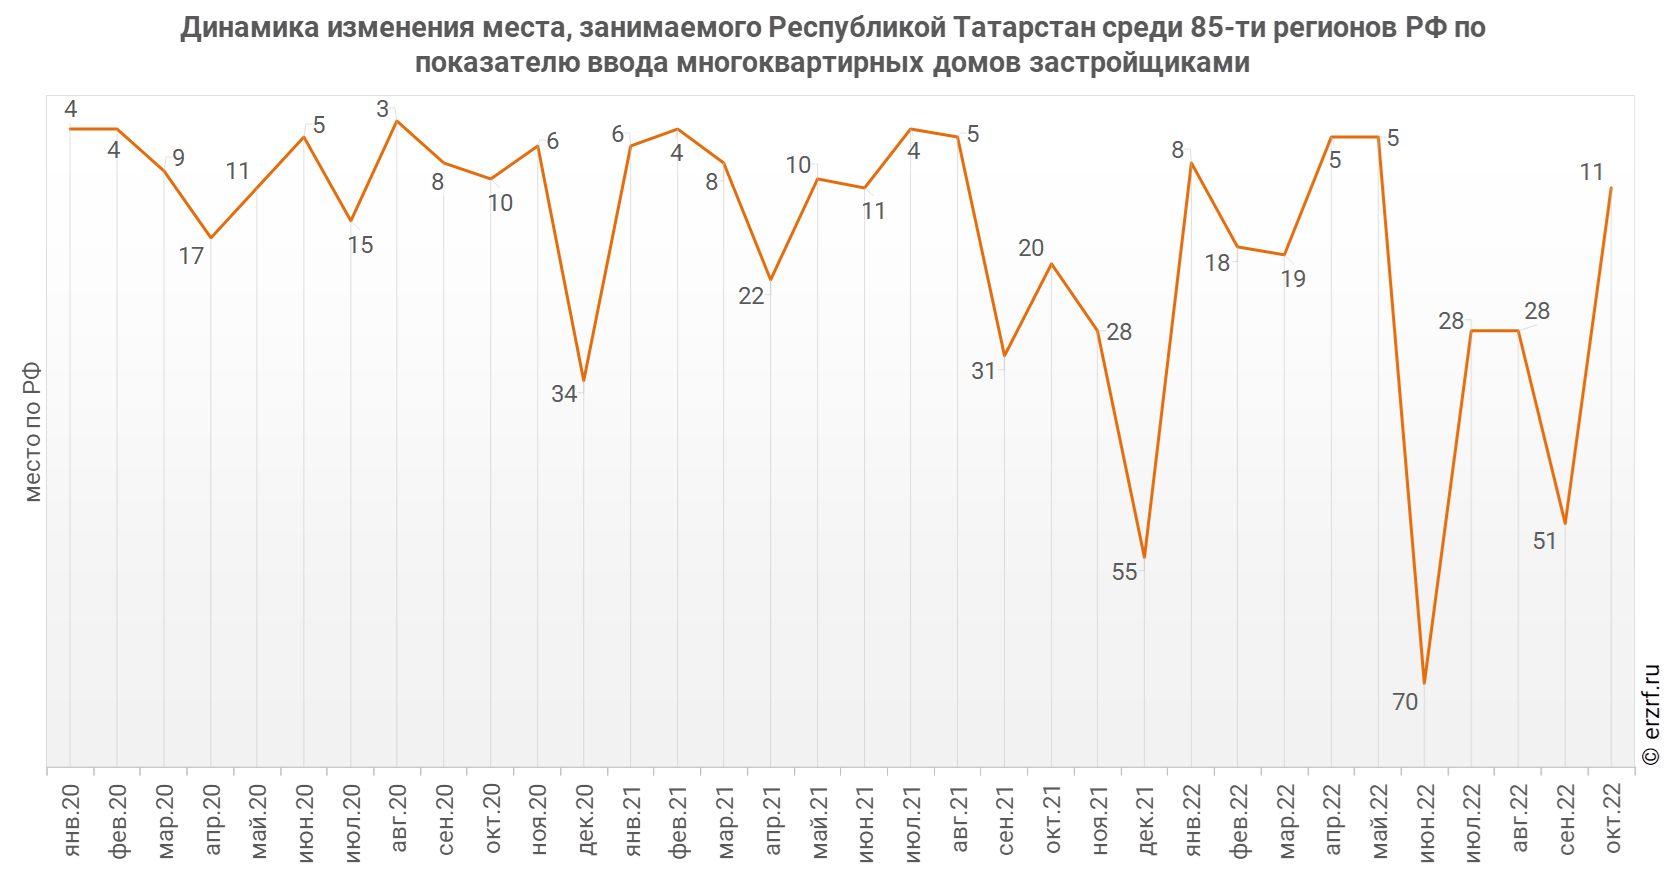 Динамика изменения места, занимаемого Республикой Татарстан среди 85‑ти регионов РФ по показателю ввода многоквартирных домов застройщиками